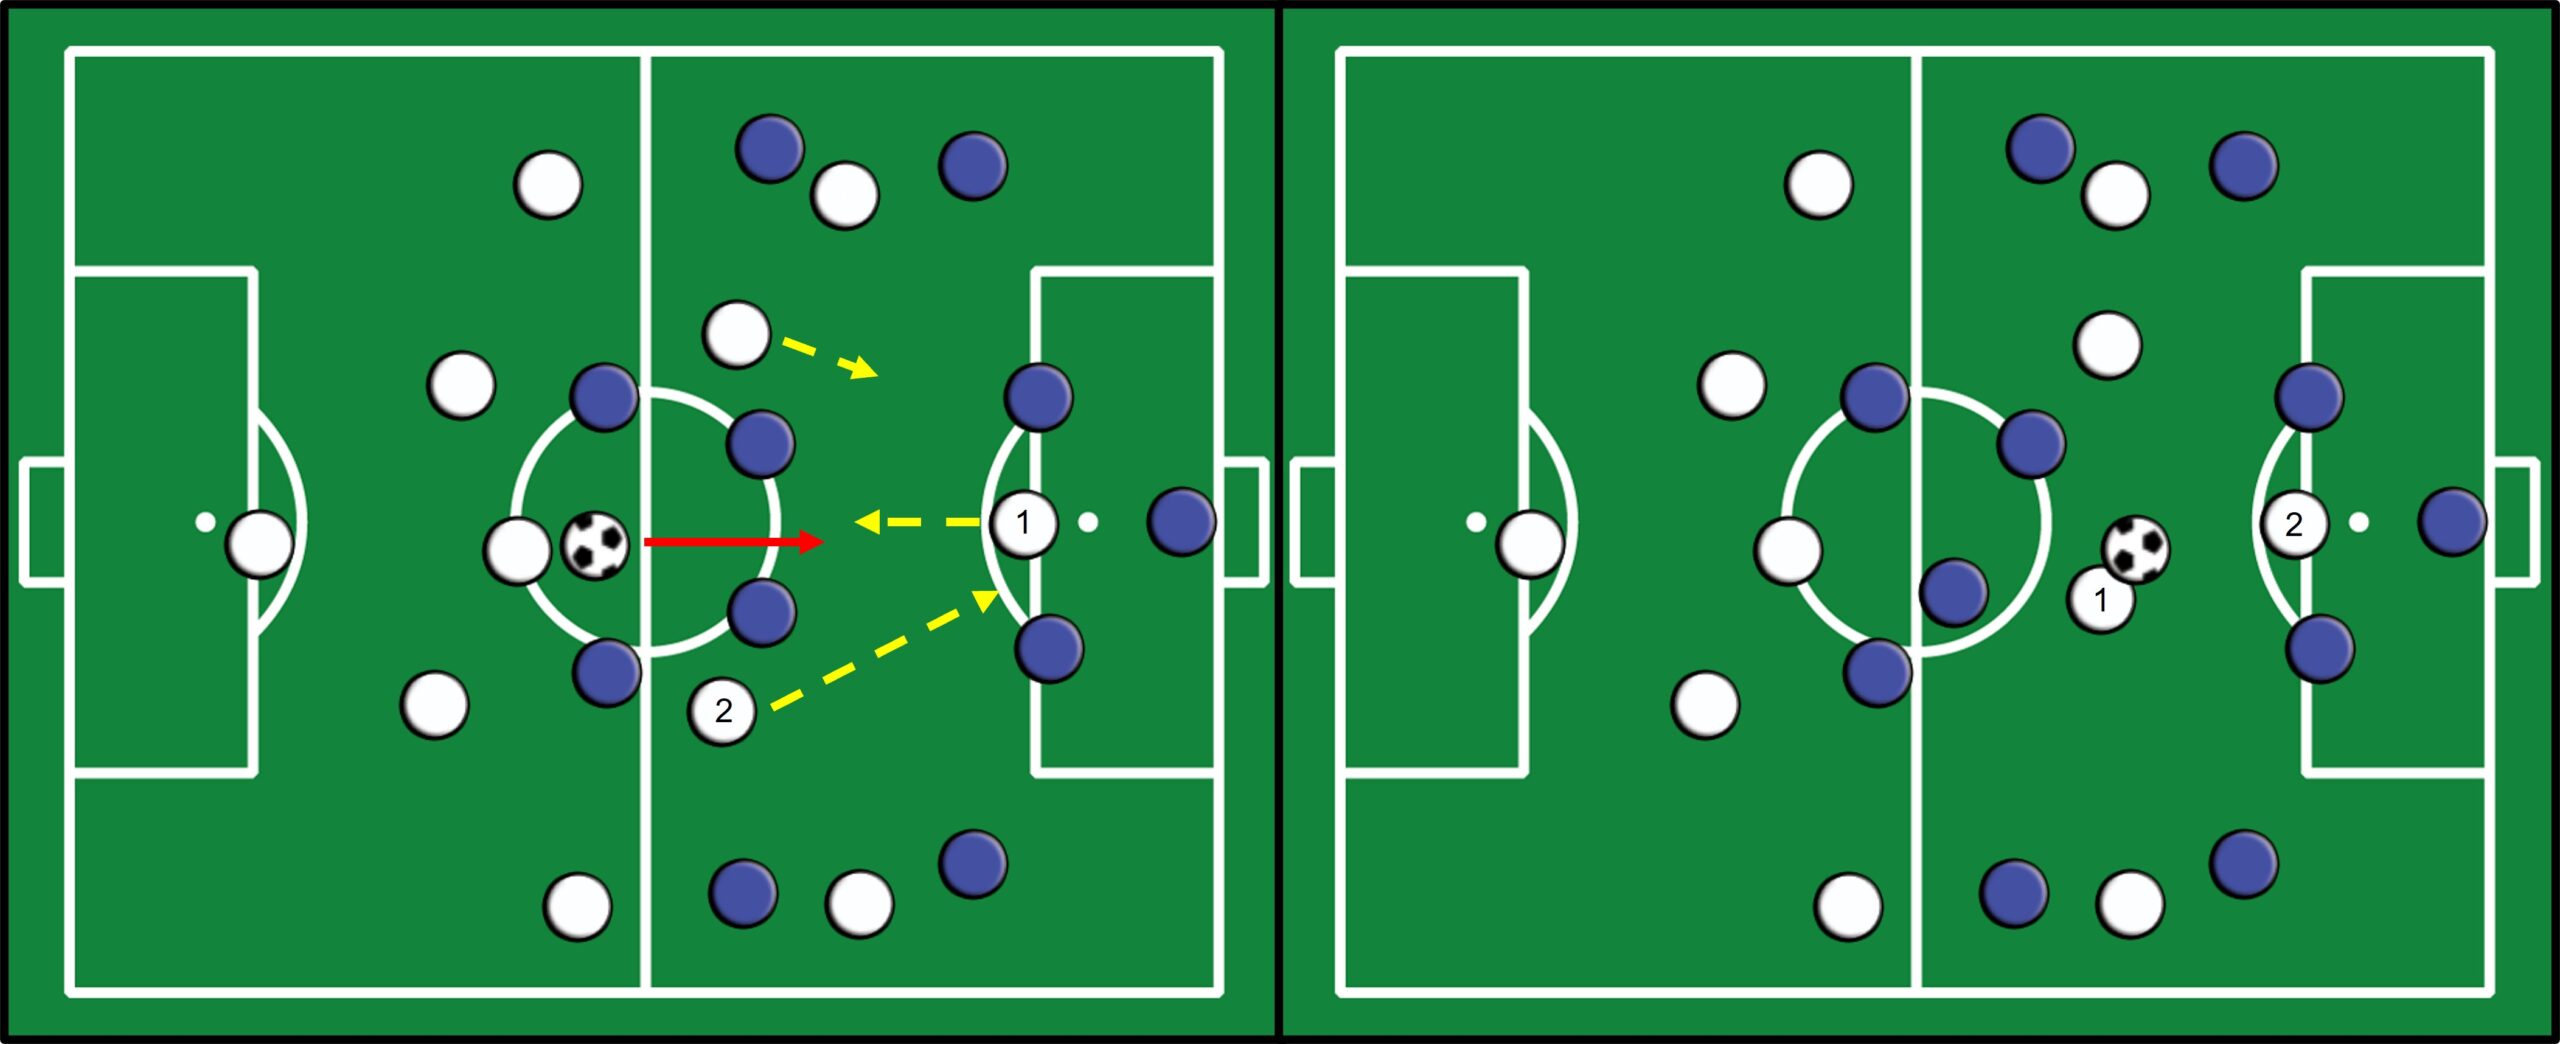 Campo de futebol com peças brancas e azuis. Setas amarelas indicam movimentação. Seta vermelha indicando passe.